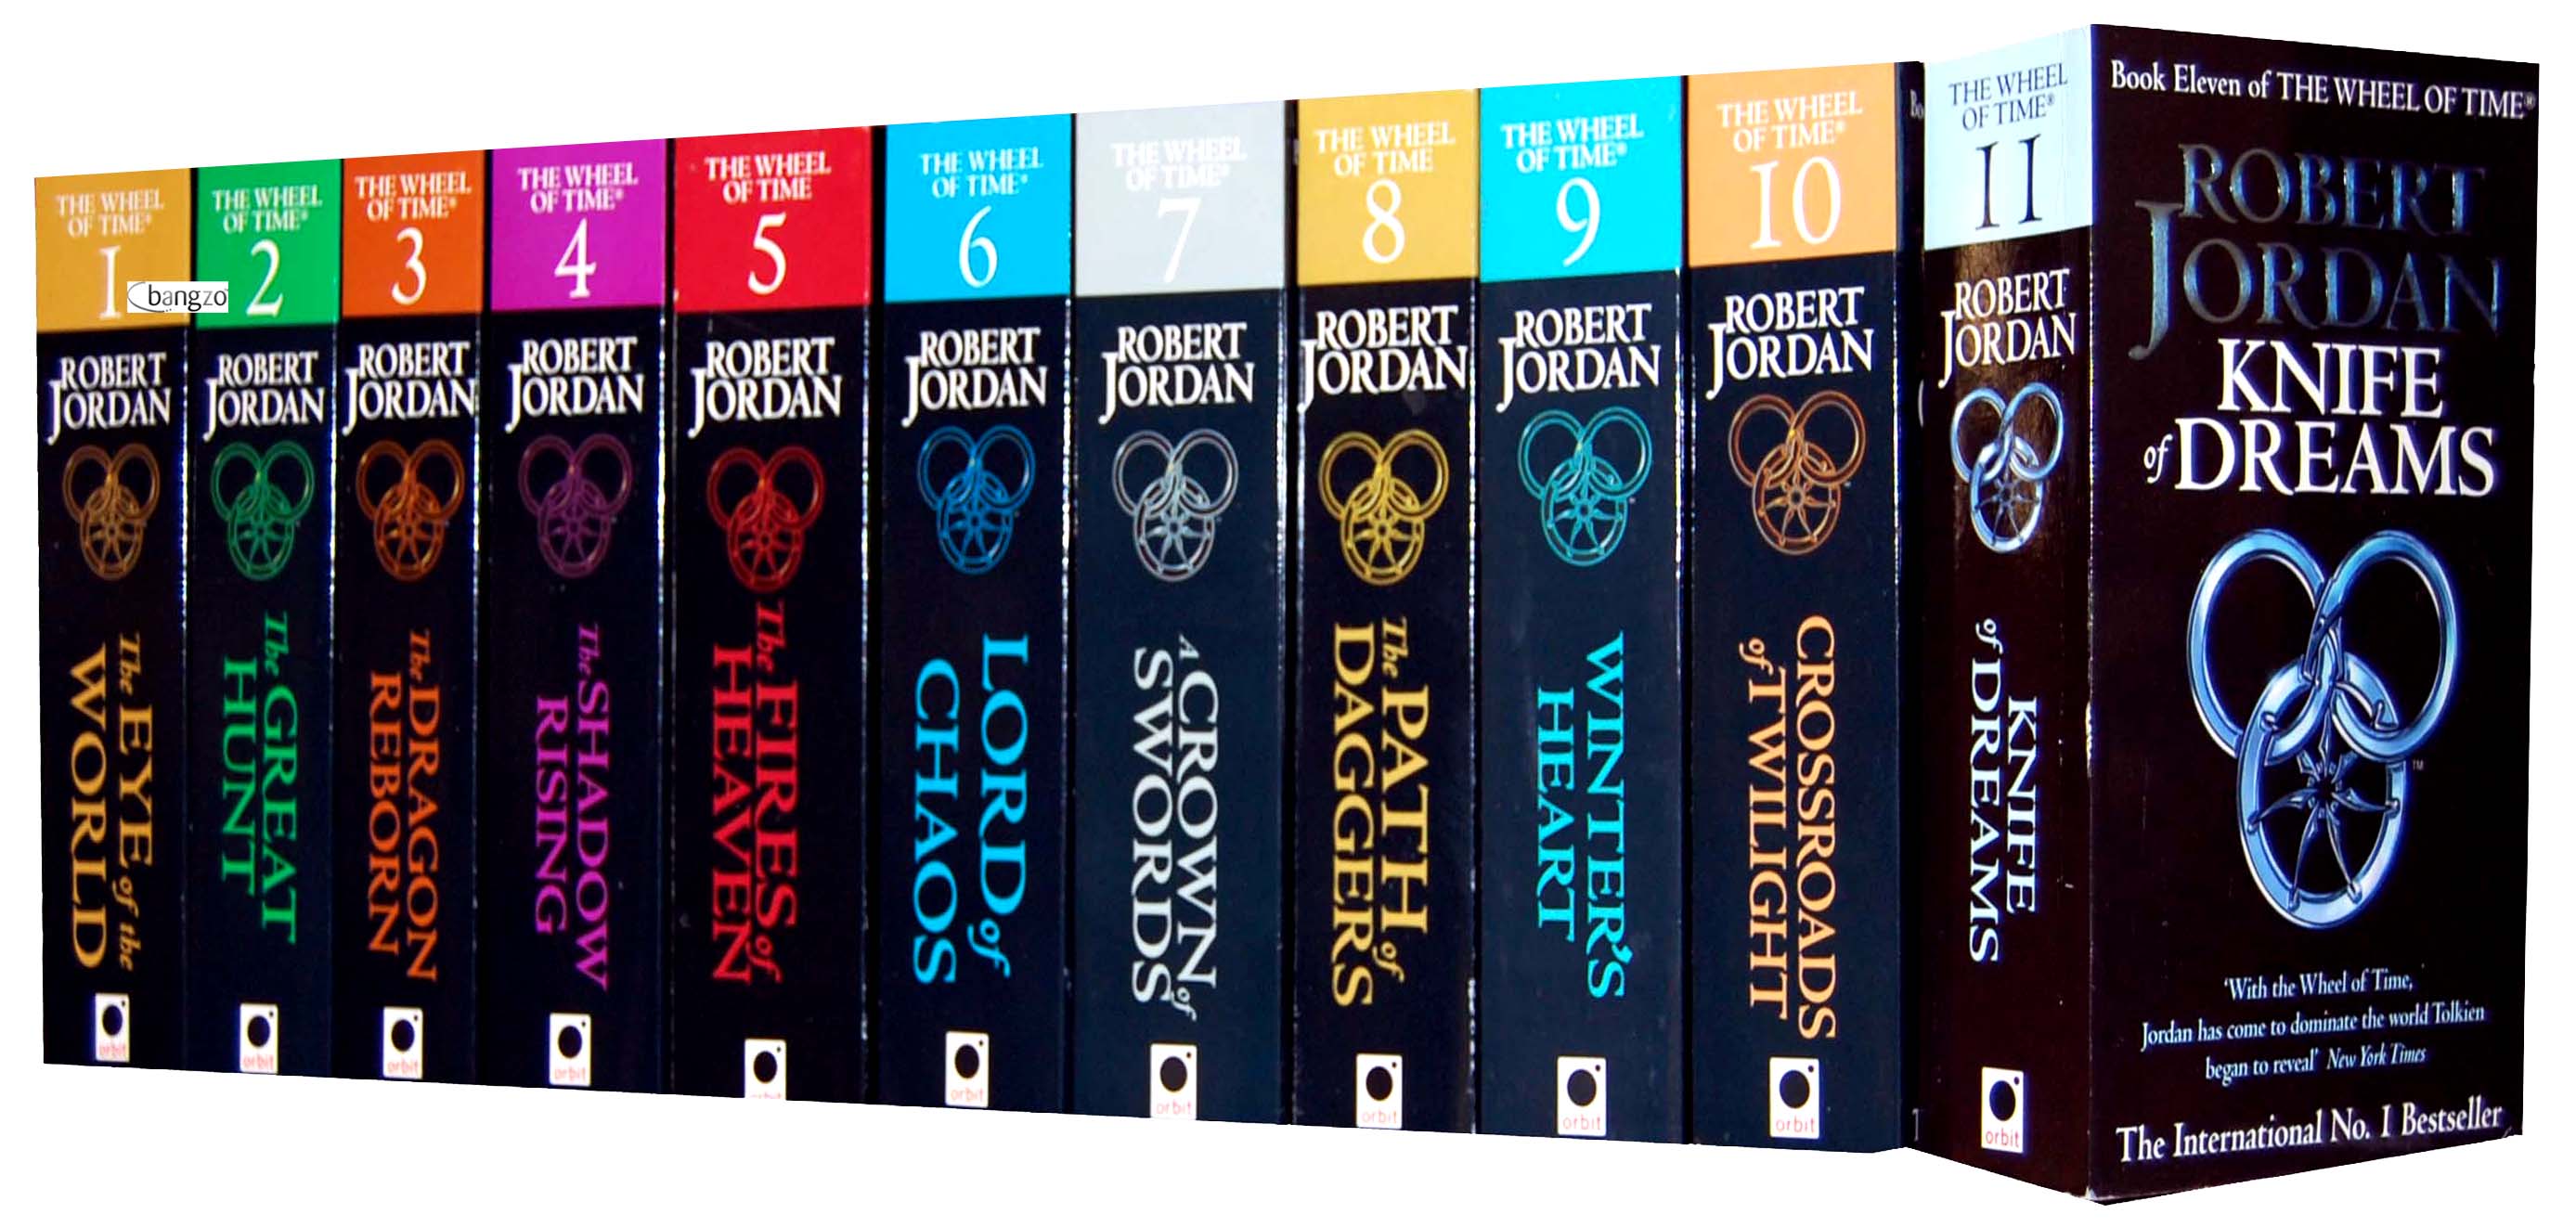 Os 11 primeiros livros da série, escritos por Robert Jordan.